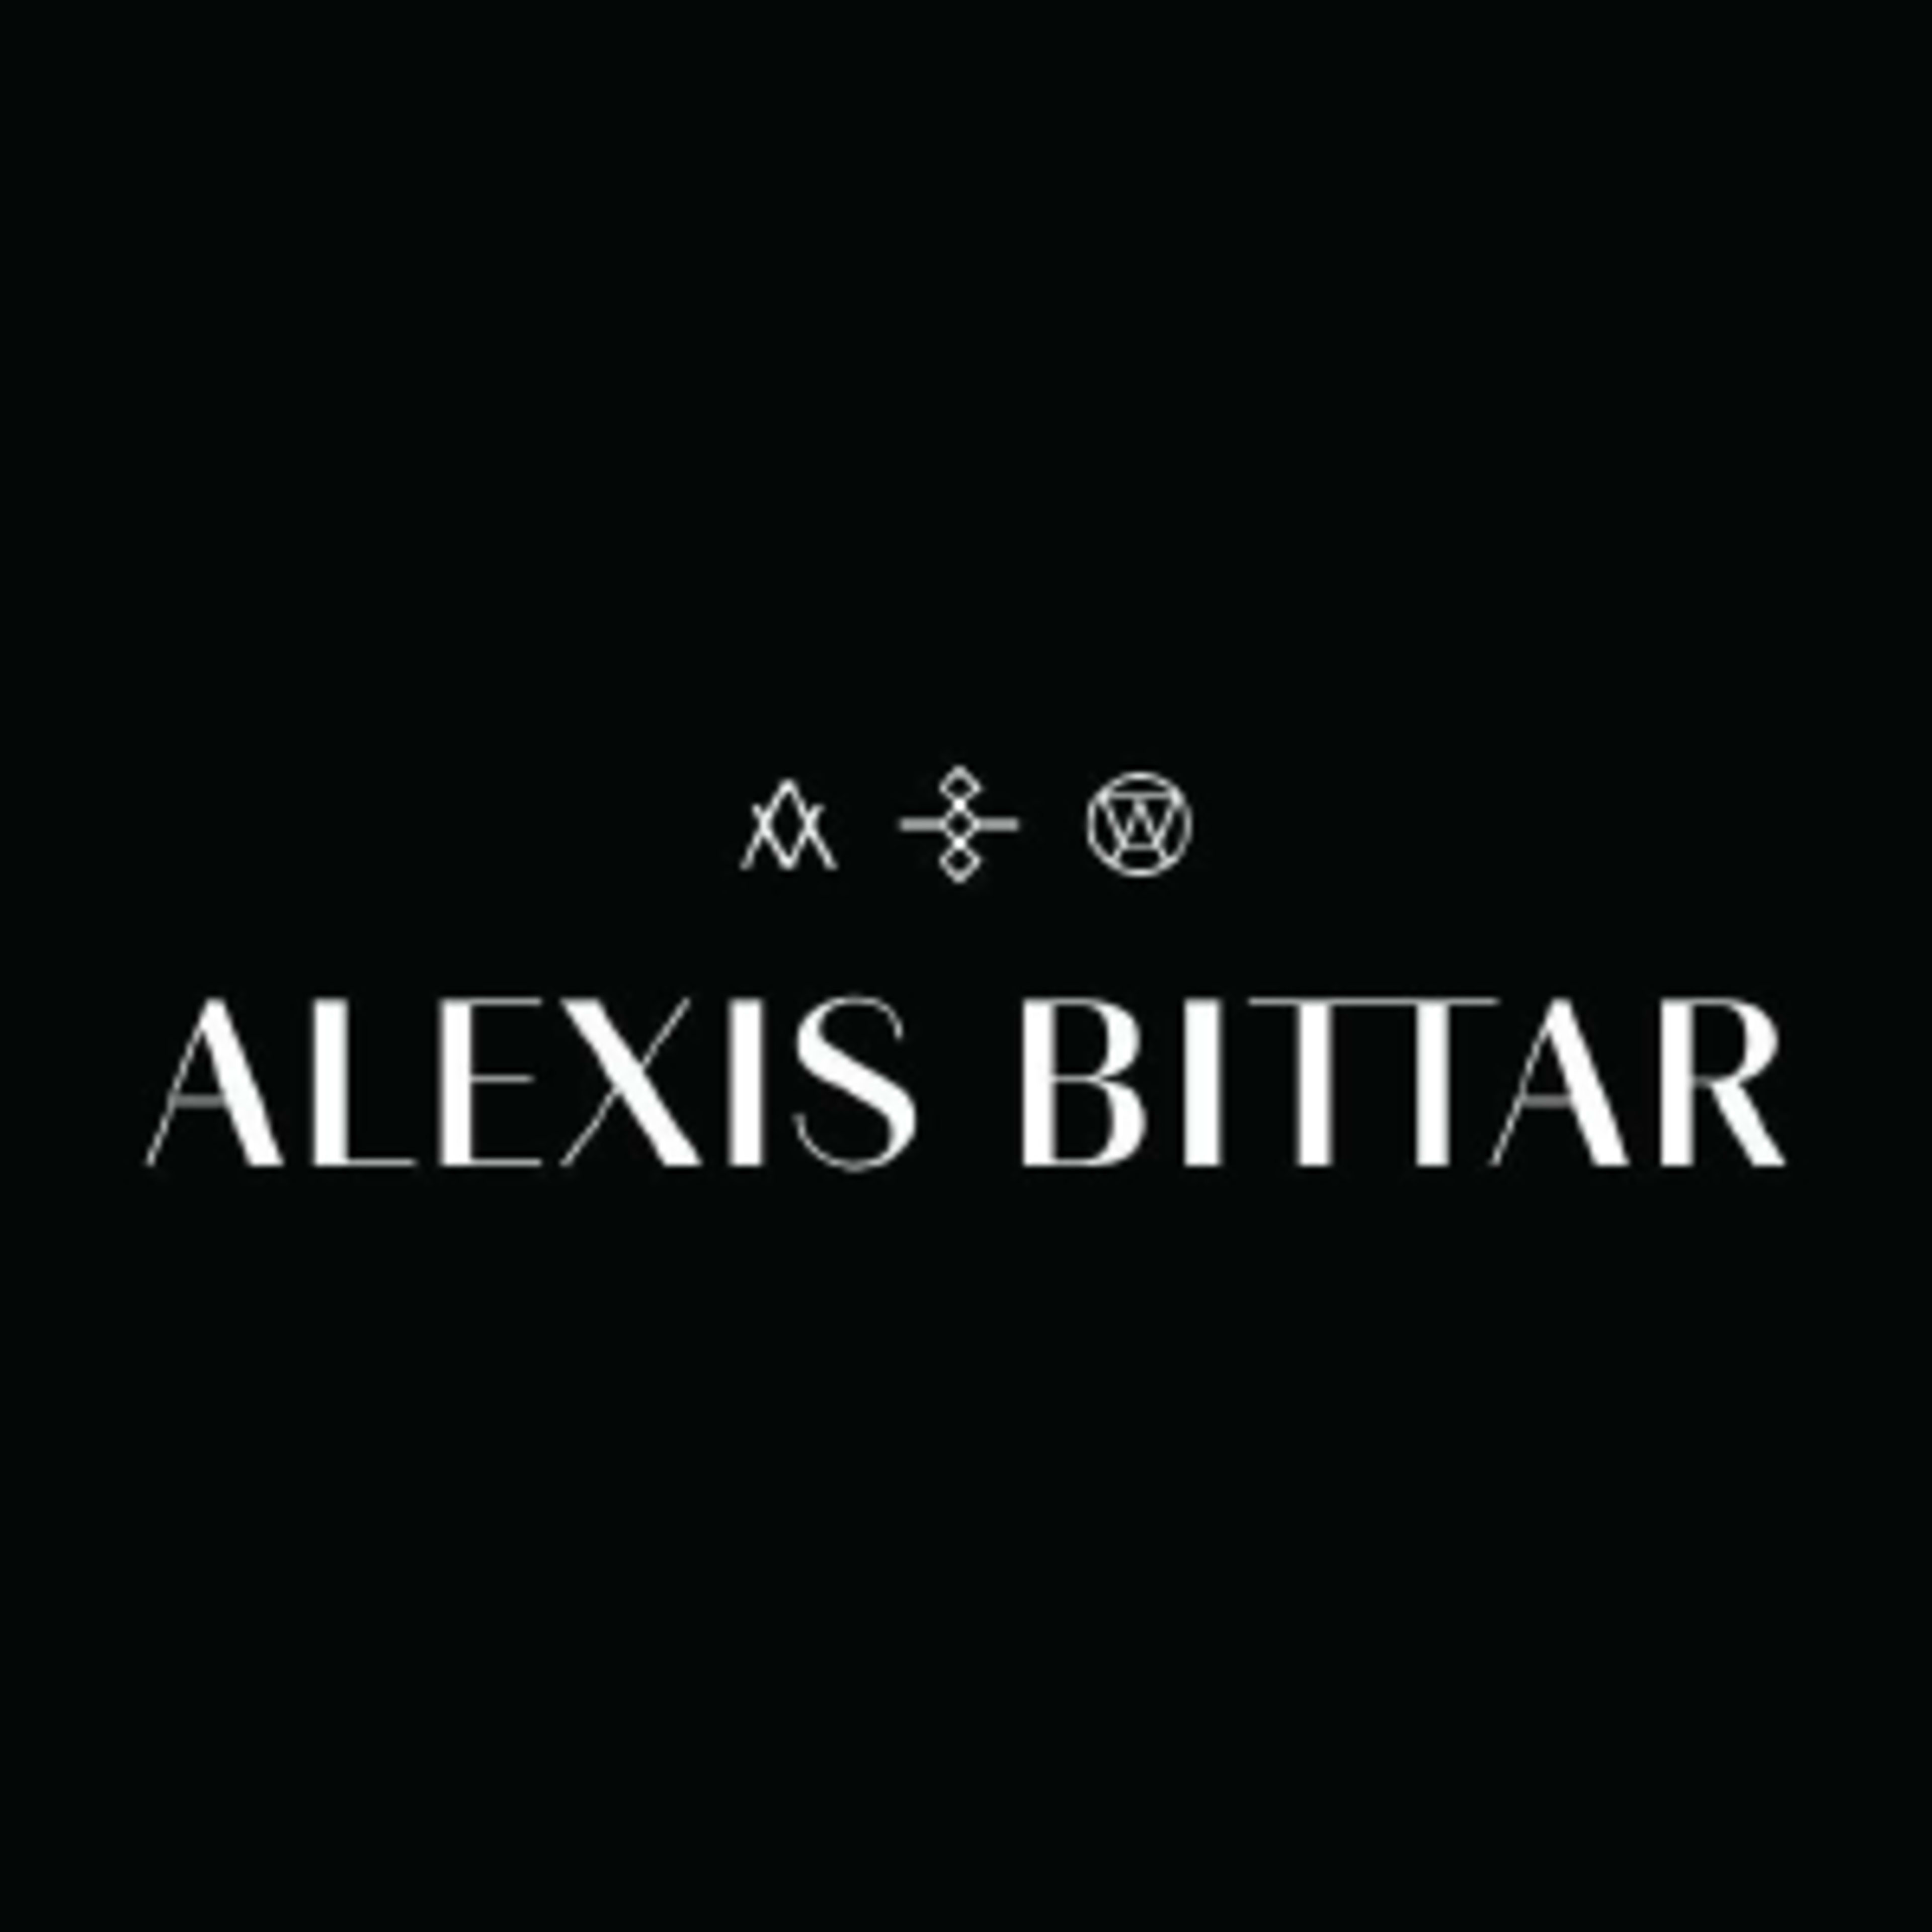 Alexis Bittar Code